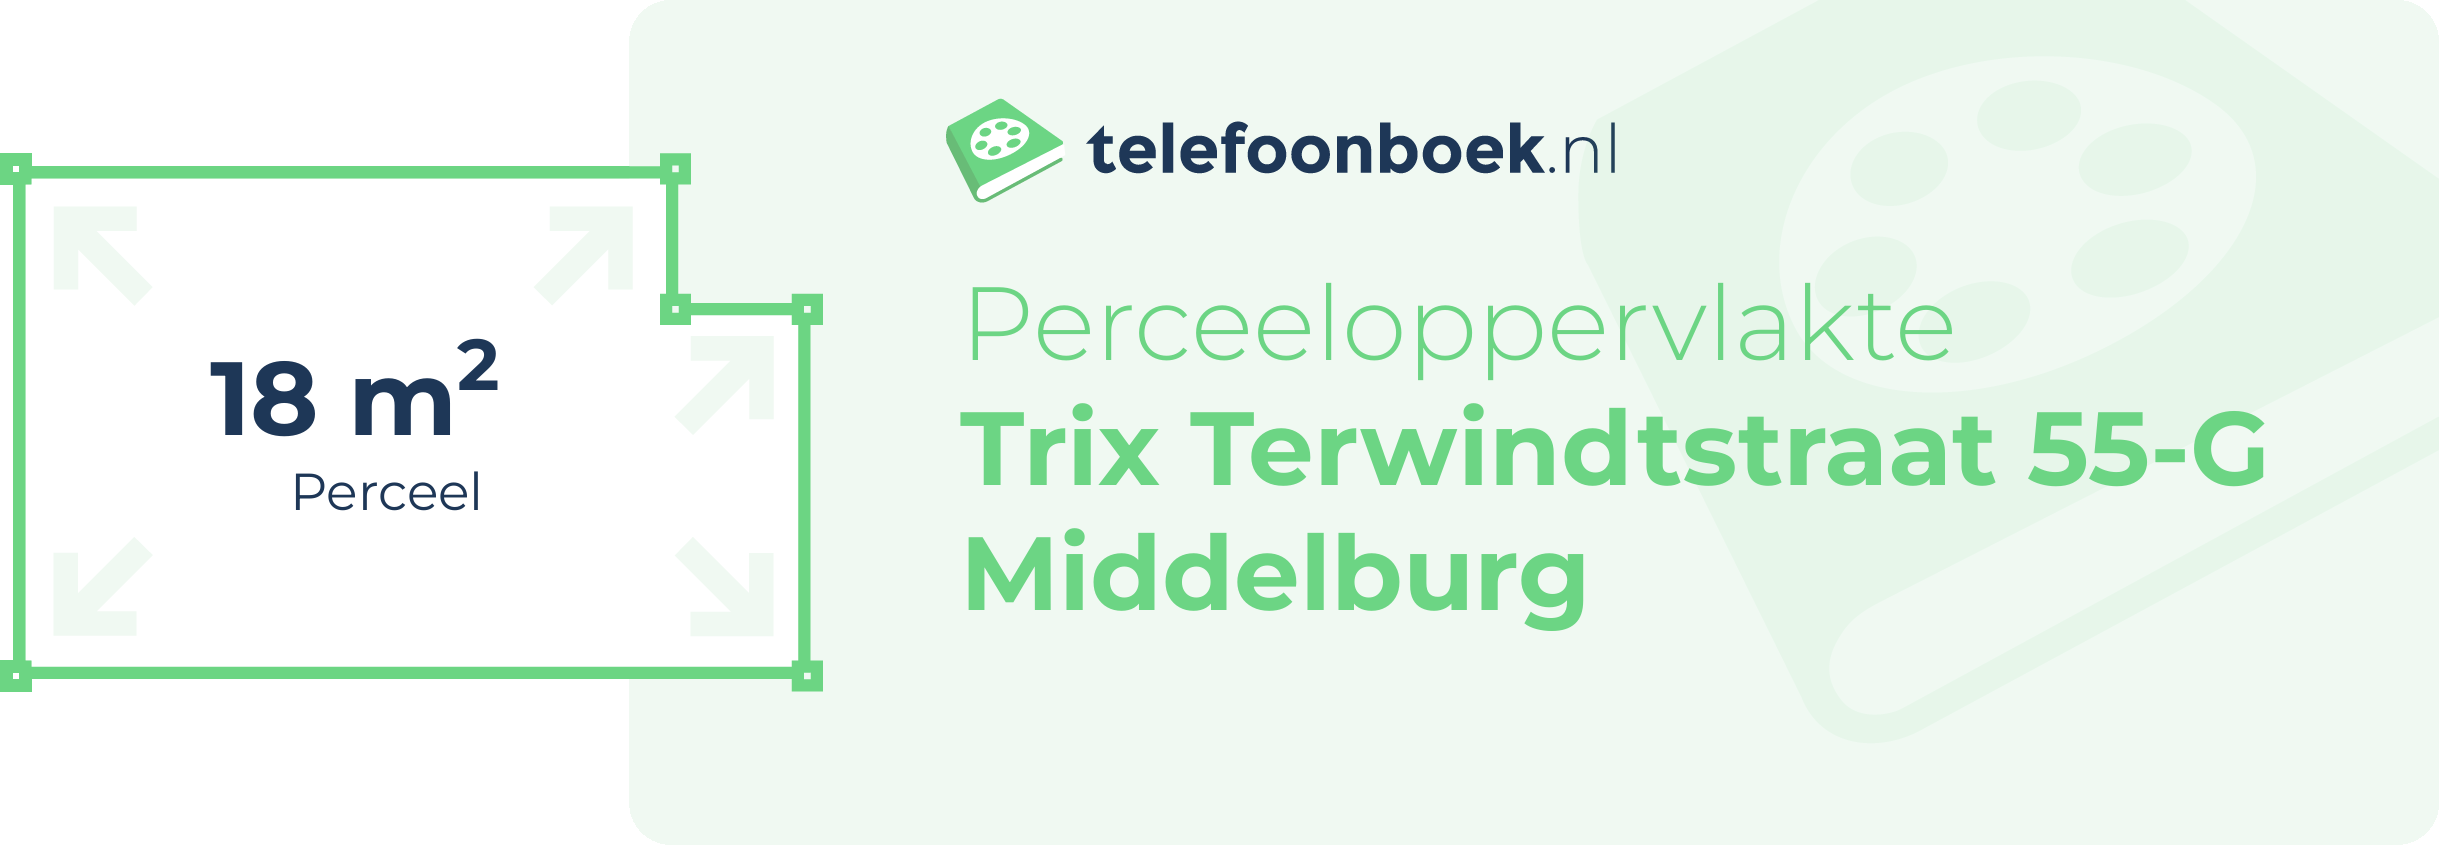 Perceeloppervlakte Trix Terwindtstraat 55-G Middelburg